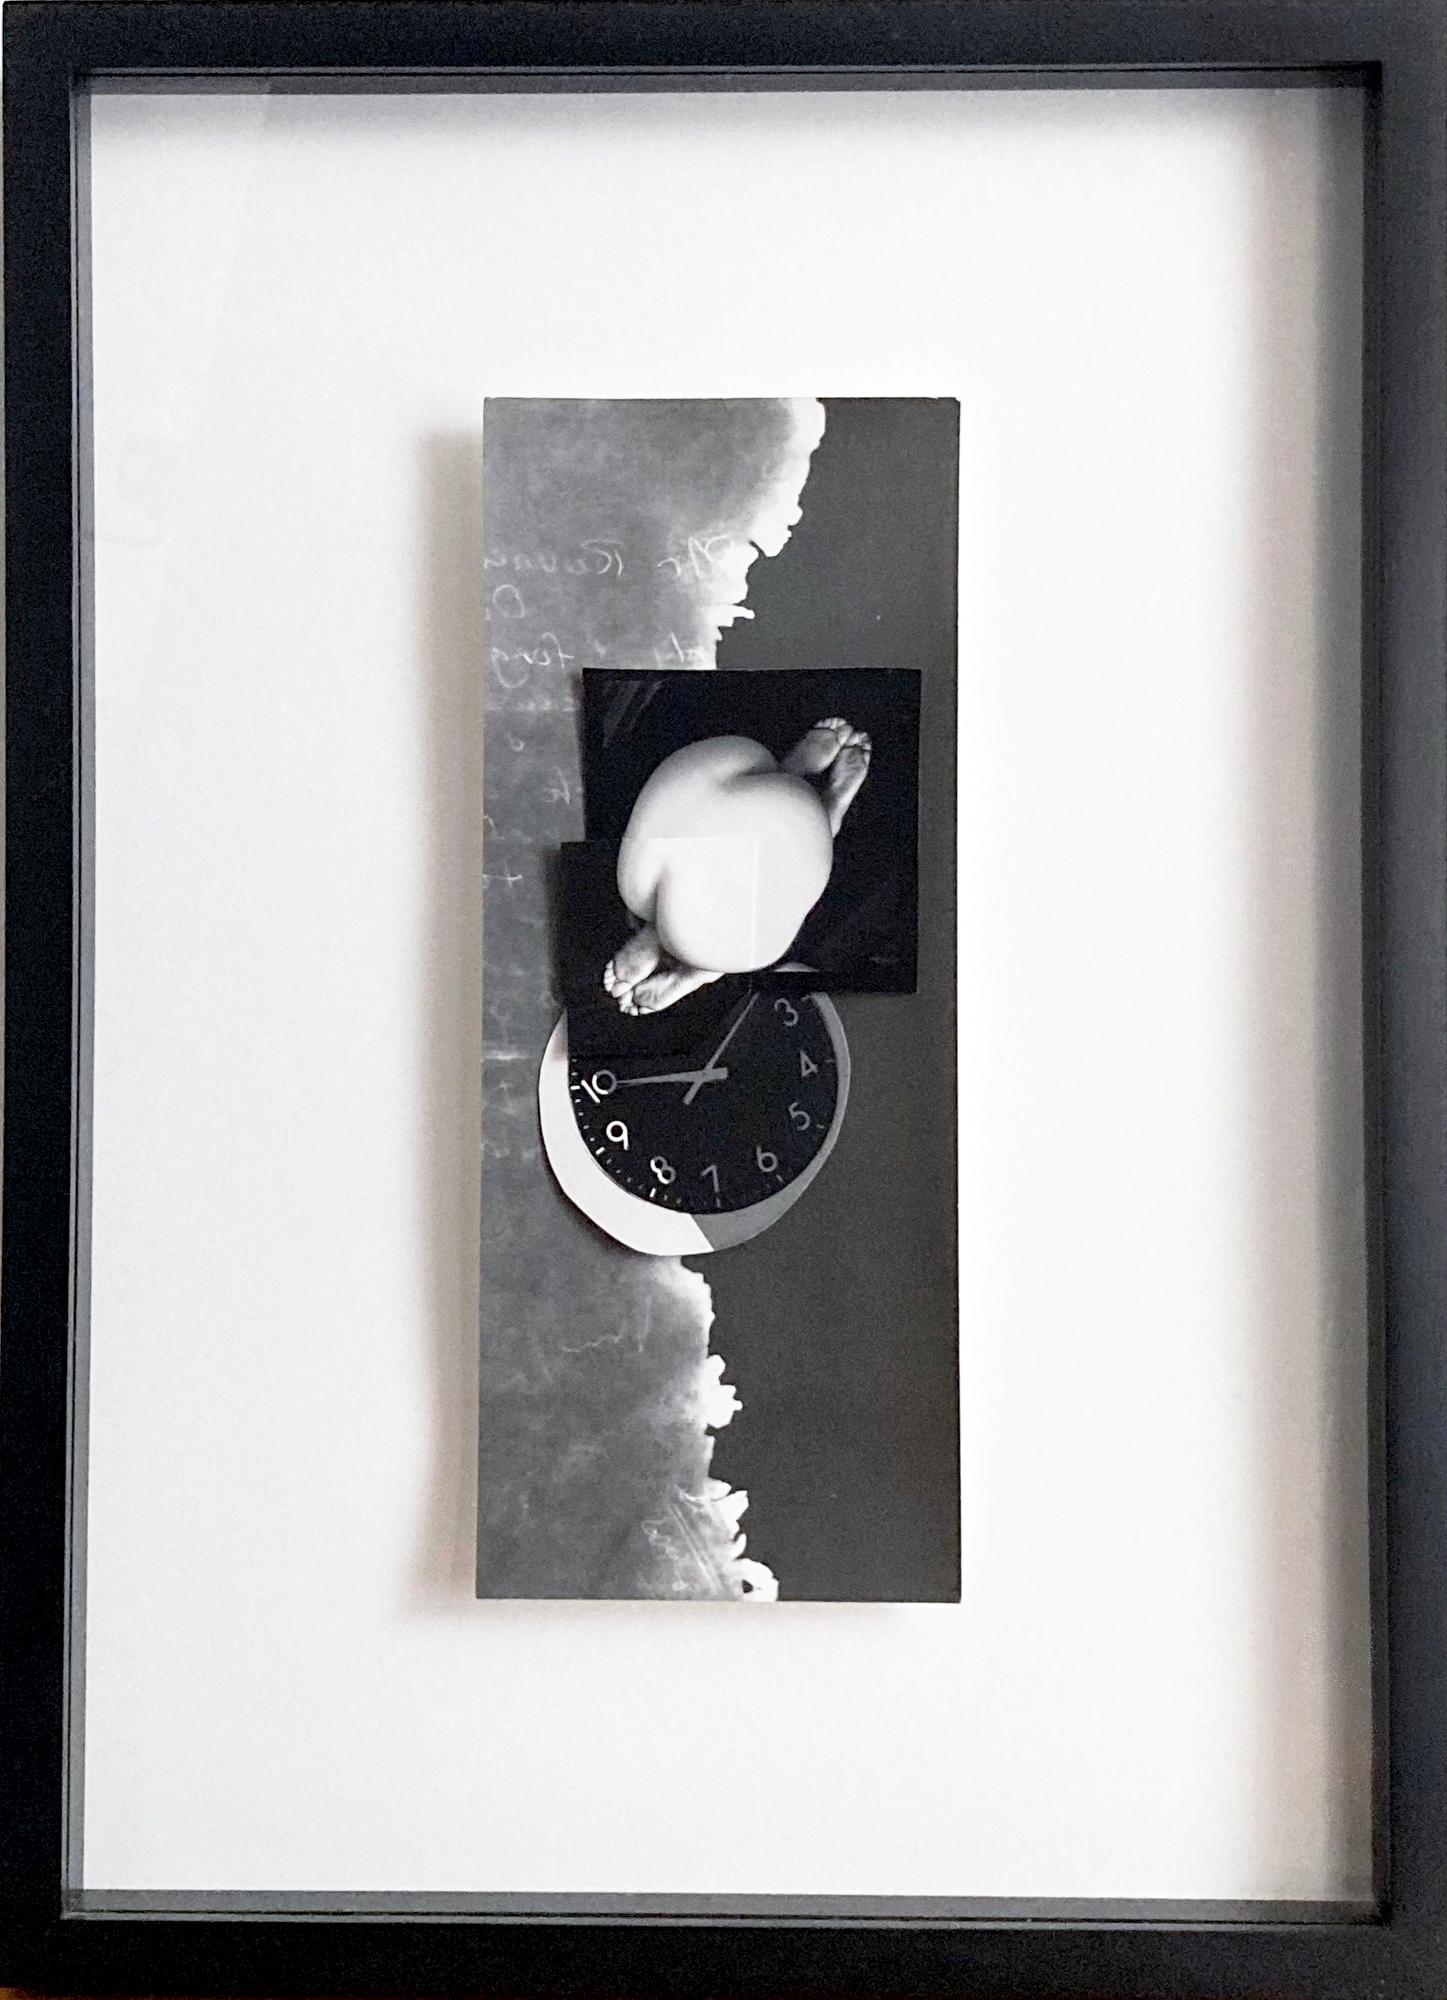 Doubleend: gerahmte abstrakte Schwarz-Weiß-Fotocollage mit Akt, Uhr, Wolken (Surrealismus), Photograph, von Jenny Lynn